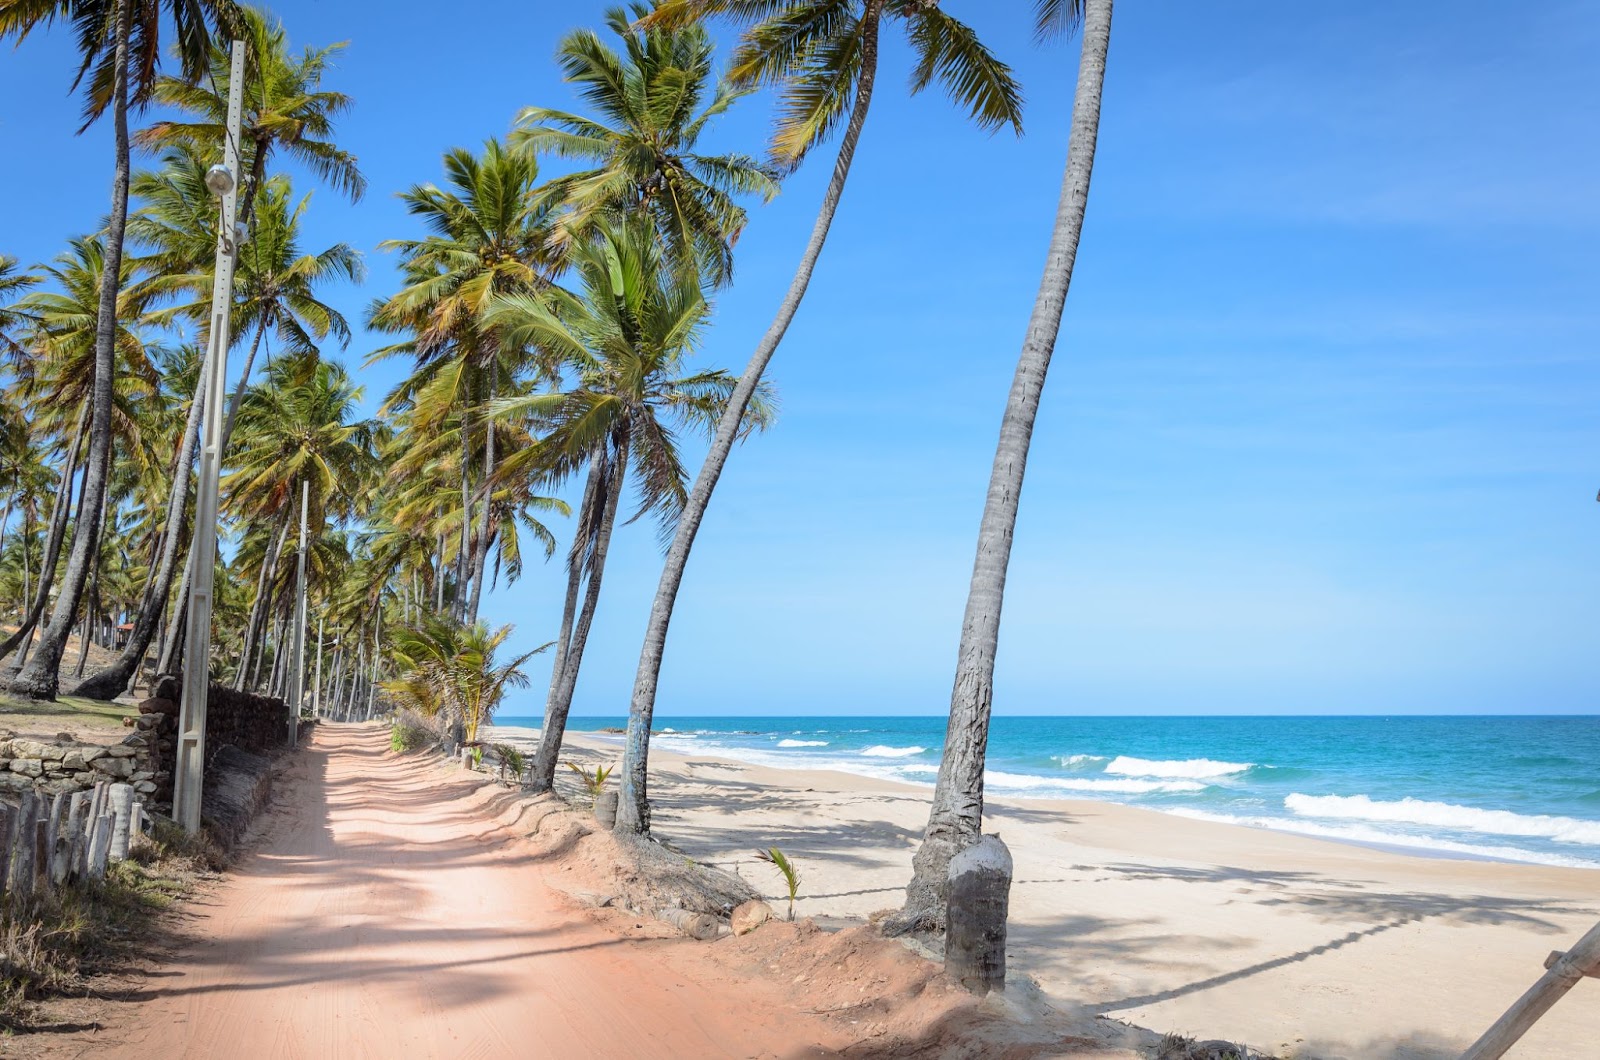 Estreito caminho de terra batida que passa entre os coqueiros na Praia de Manaíra. Ao lado dele, aparecem a faixa de areia branca e o mar azul